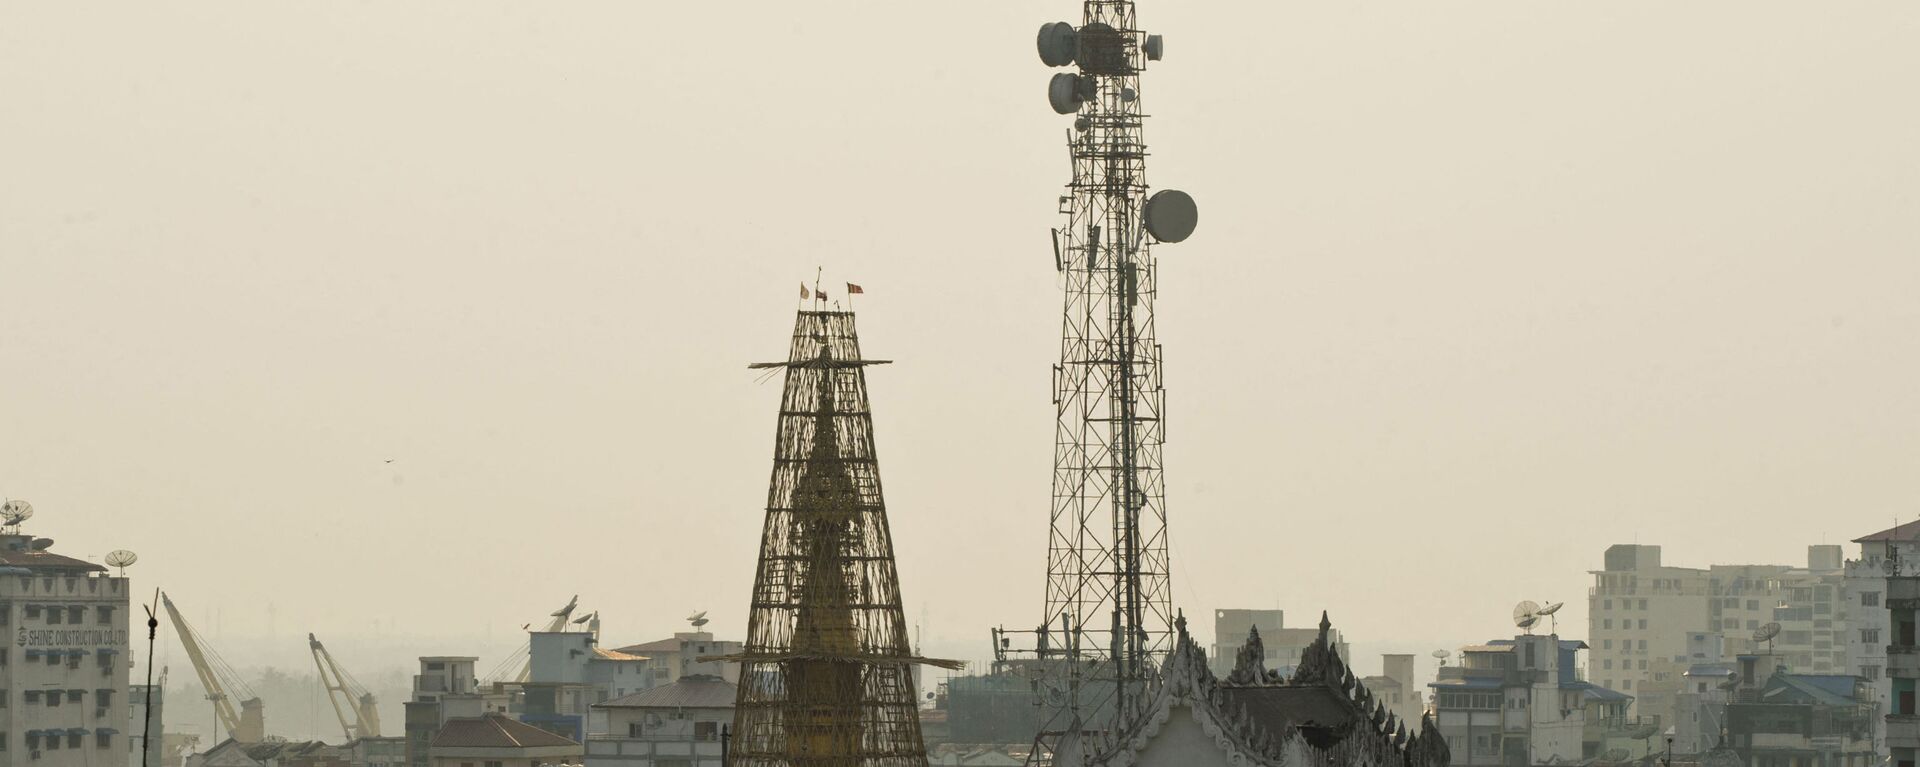 Tháp viễn thông ở Myanmar - Sputnik Việt Nam, 1920, 05.12.2021